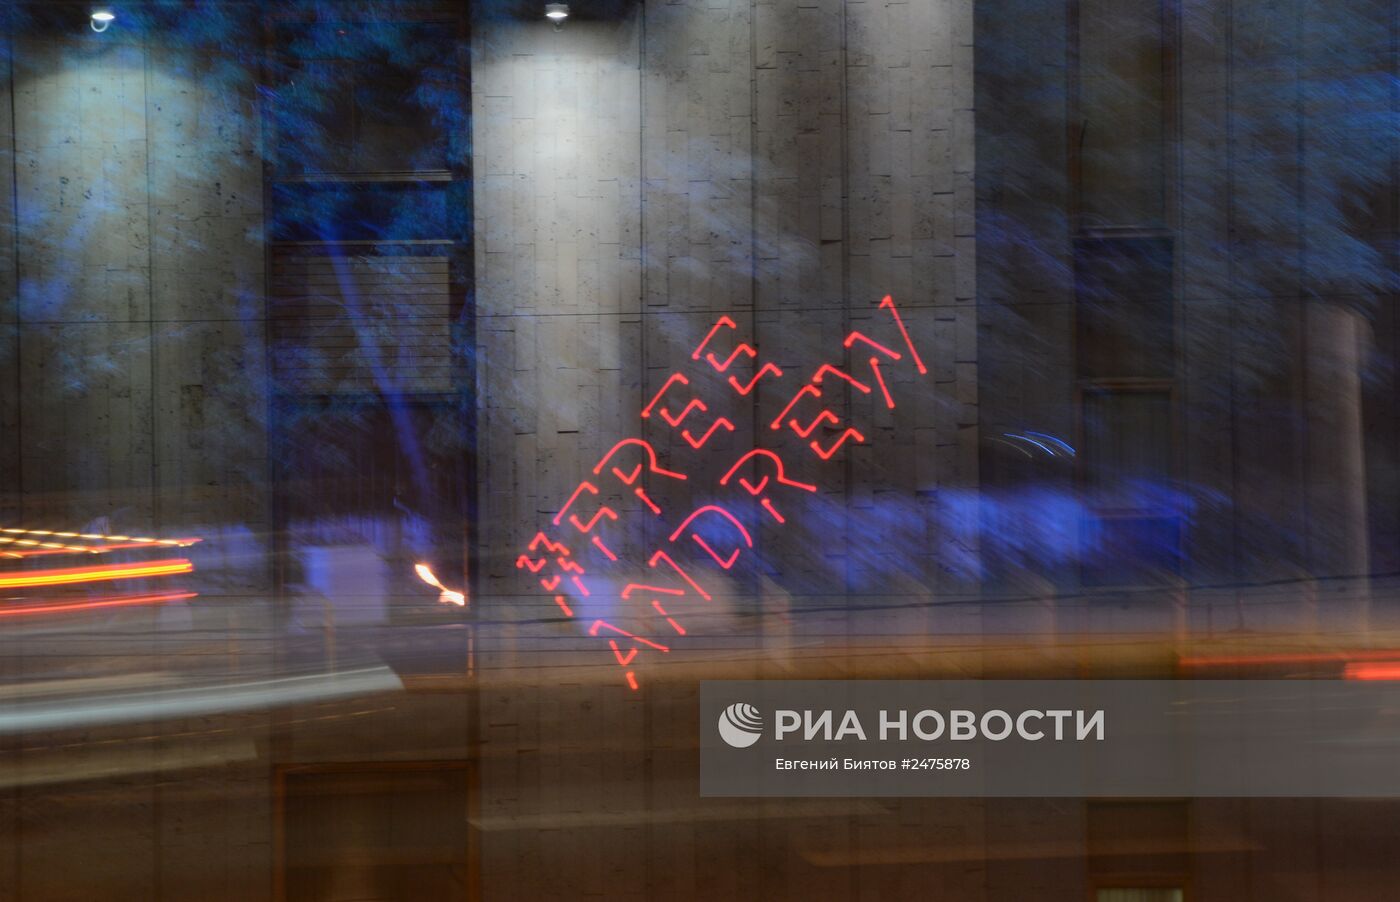 Хэштеги в поддержку А.Стенина появились на здании МИА "Россия сегодня"